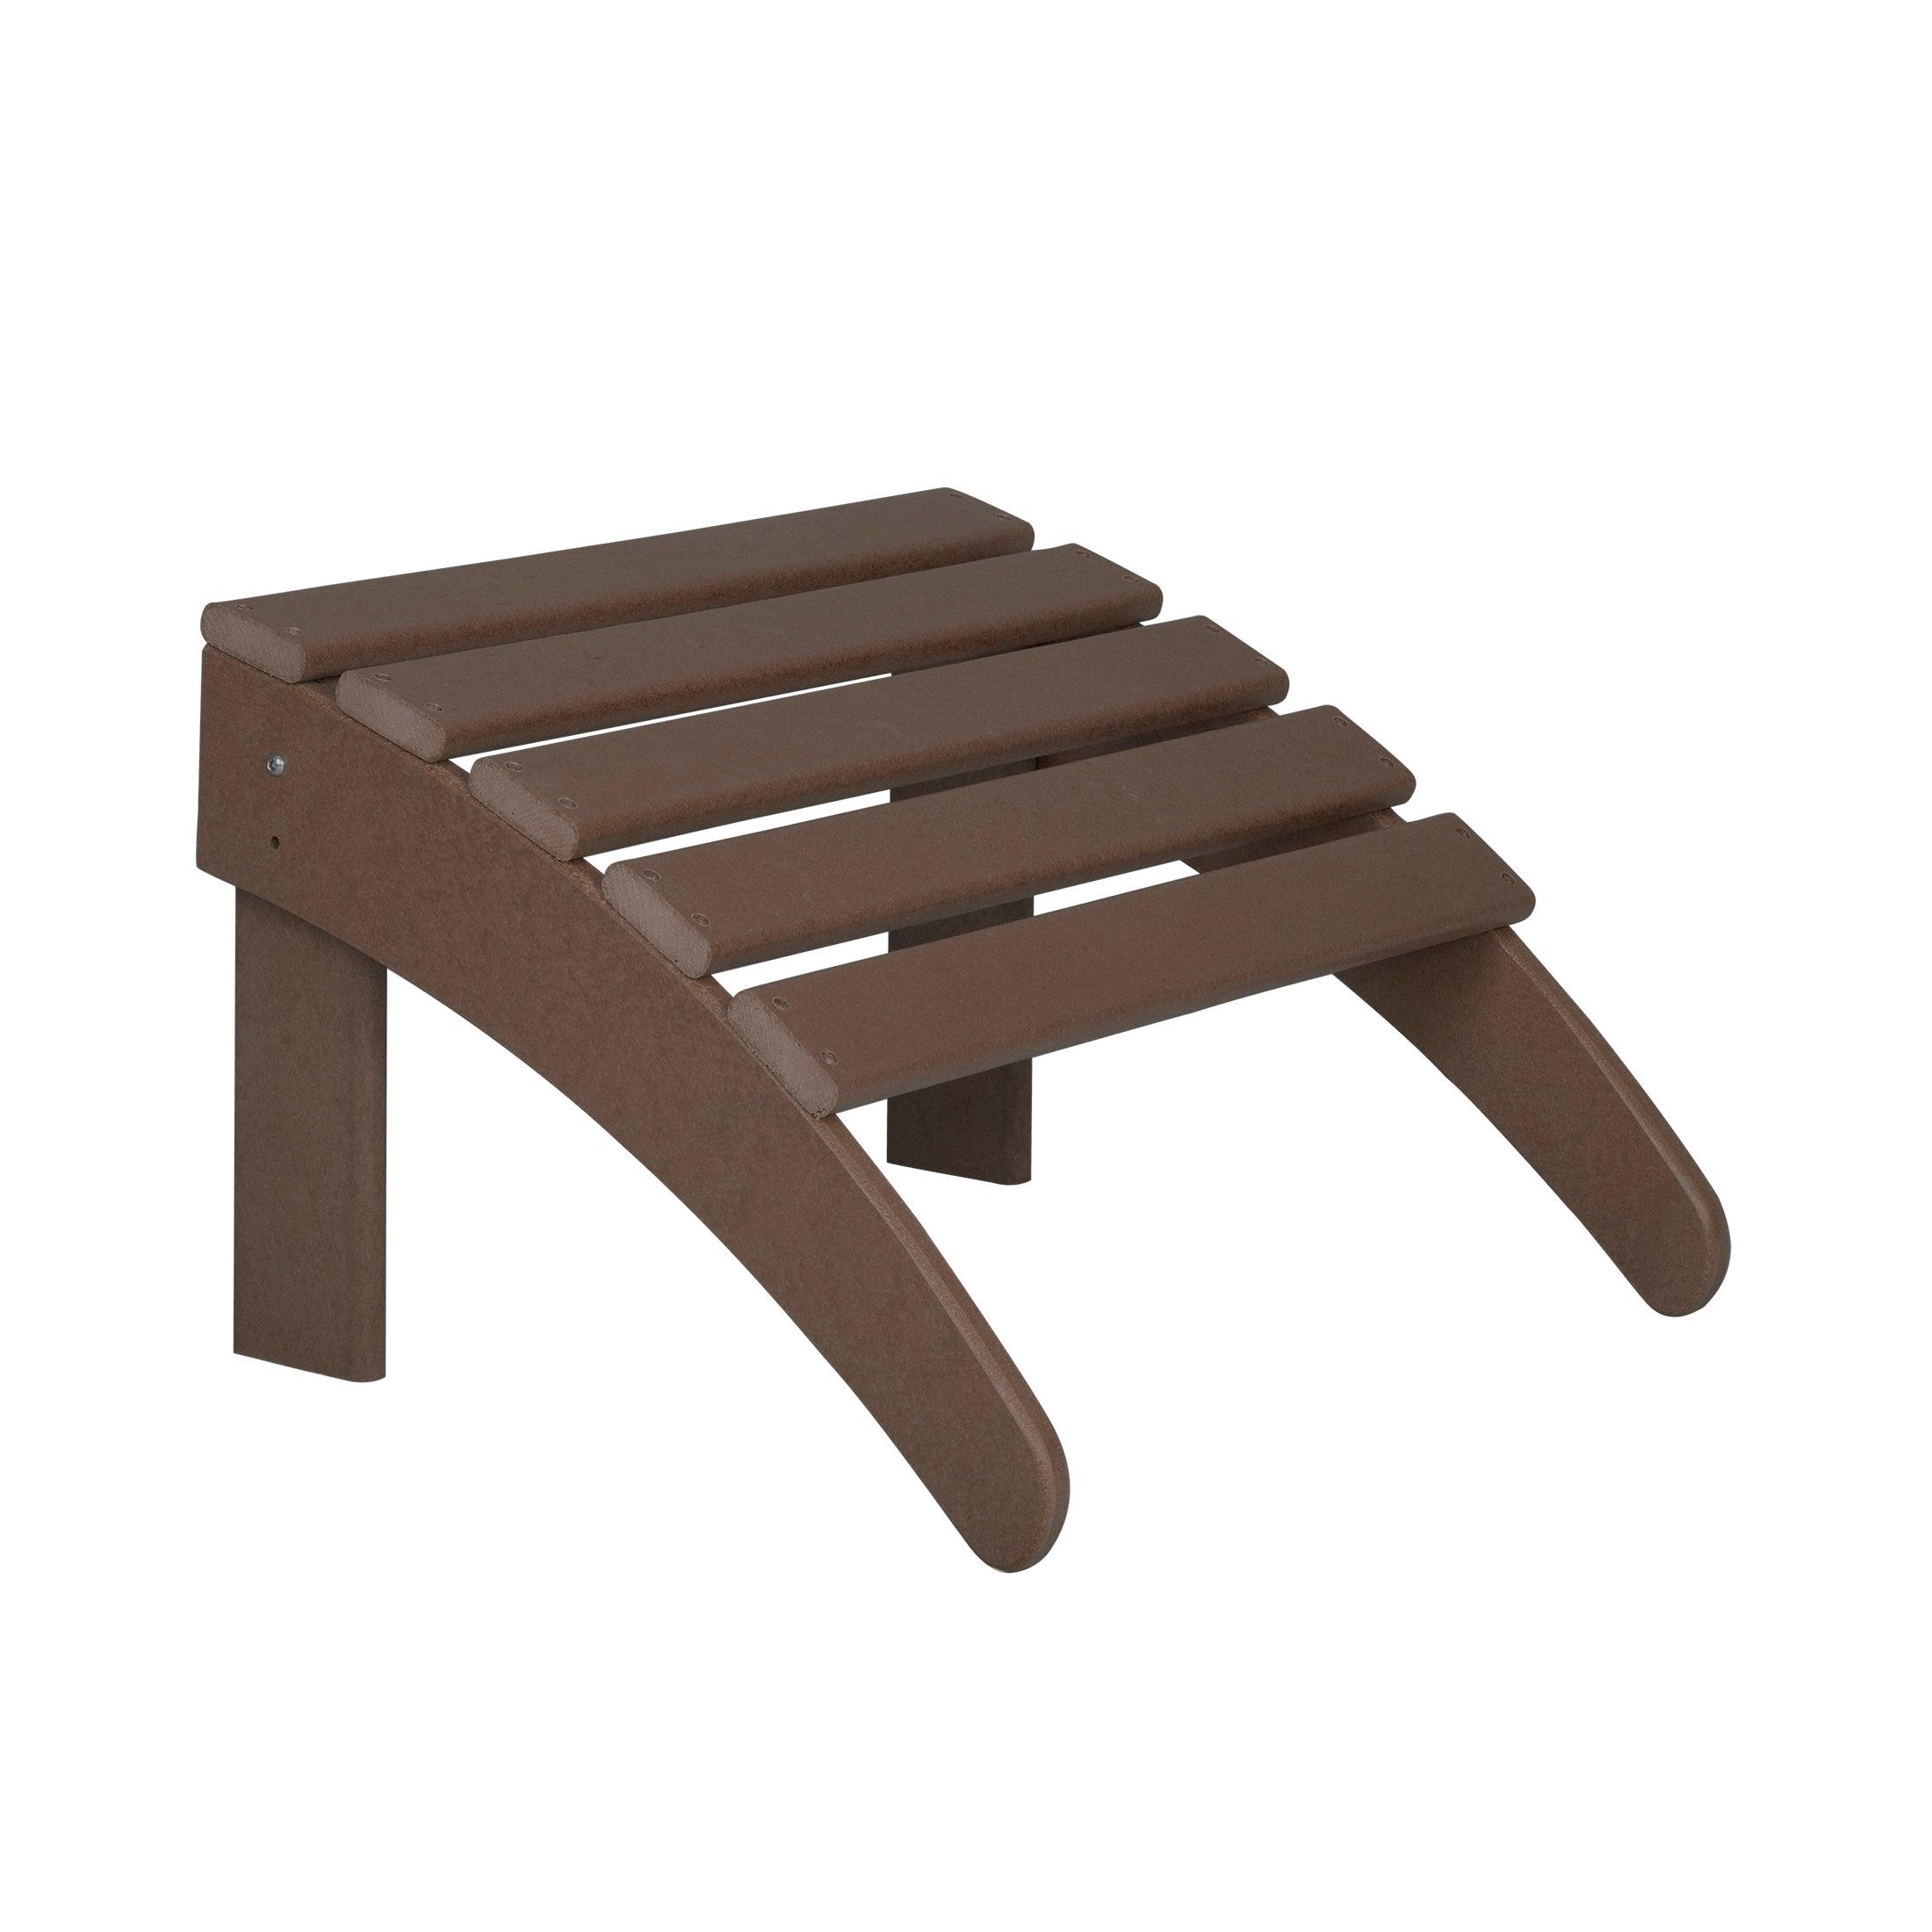 Costaelm Outdoor Adirondack Chair With Ottoman 2-Piece Set, Dark Brown